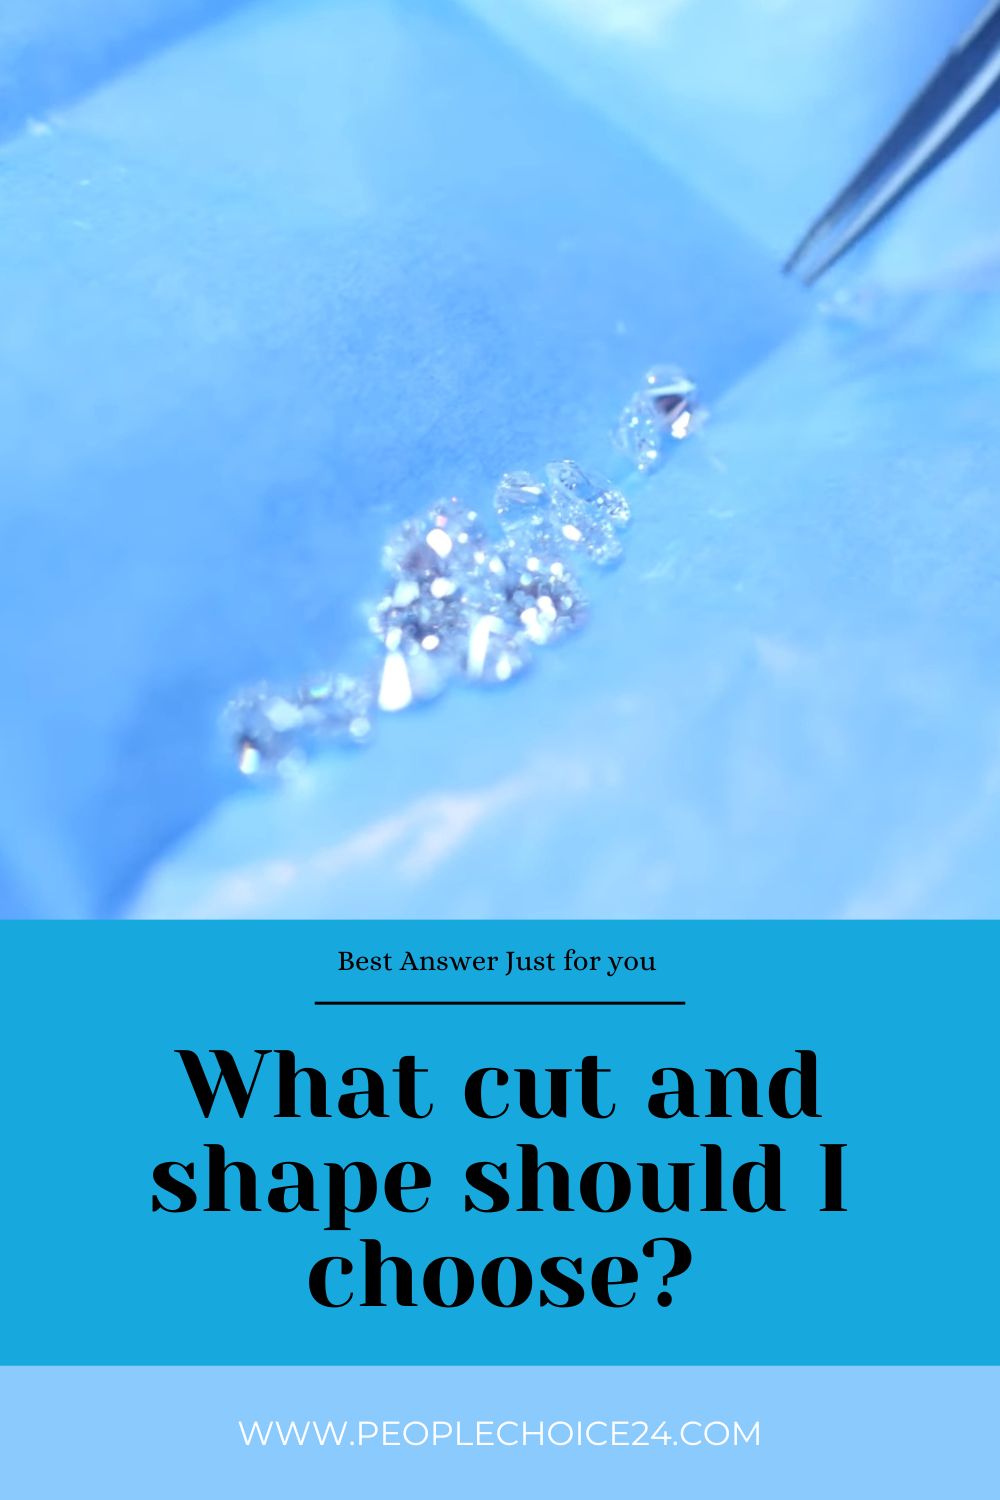 What cut and shape should I choose